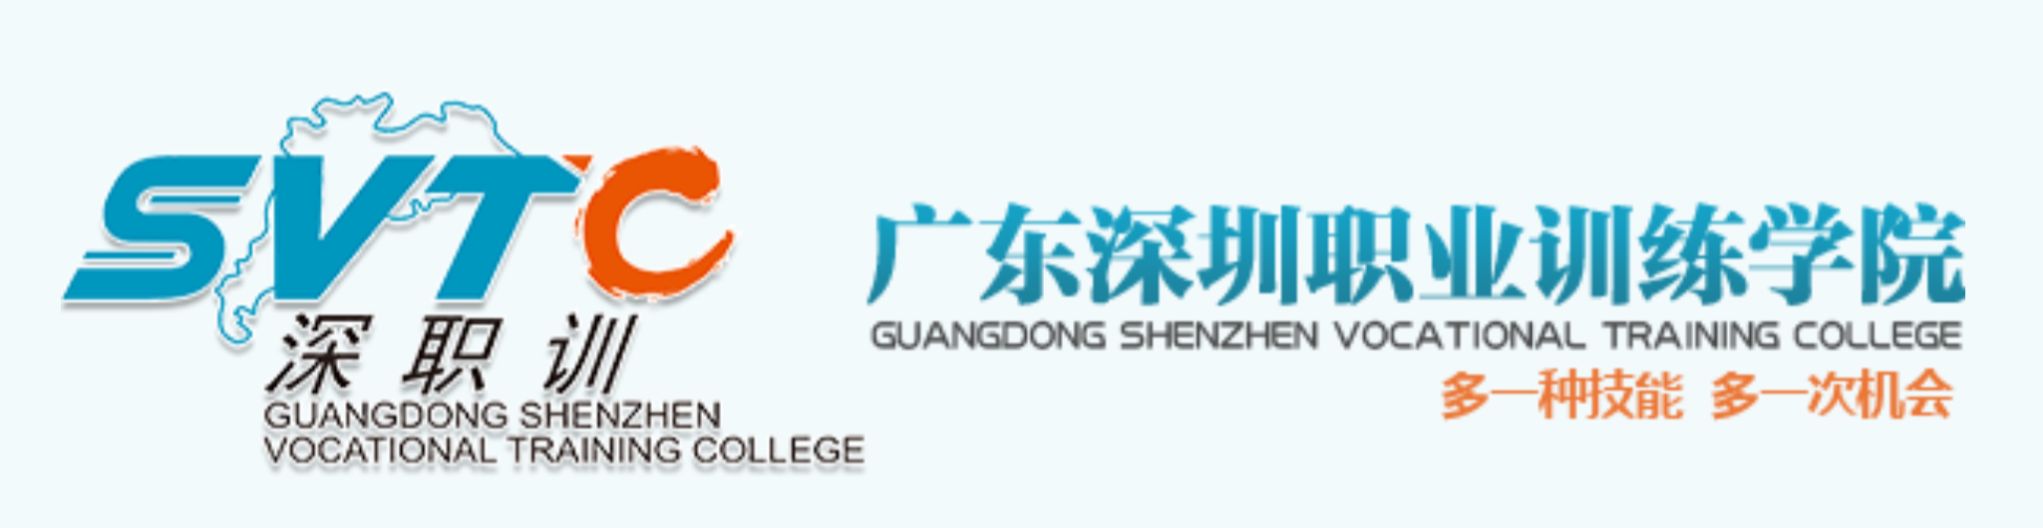 中国保健按摩师考核课程启动